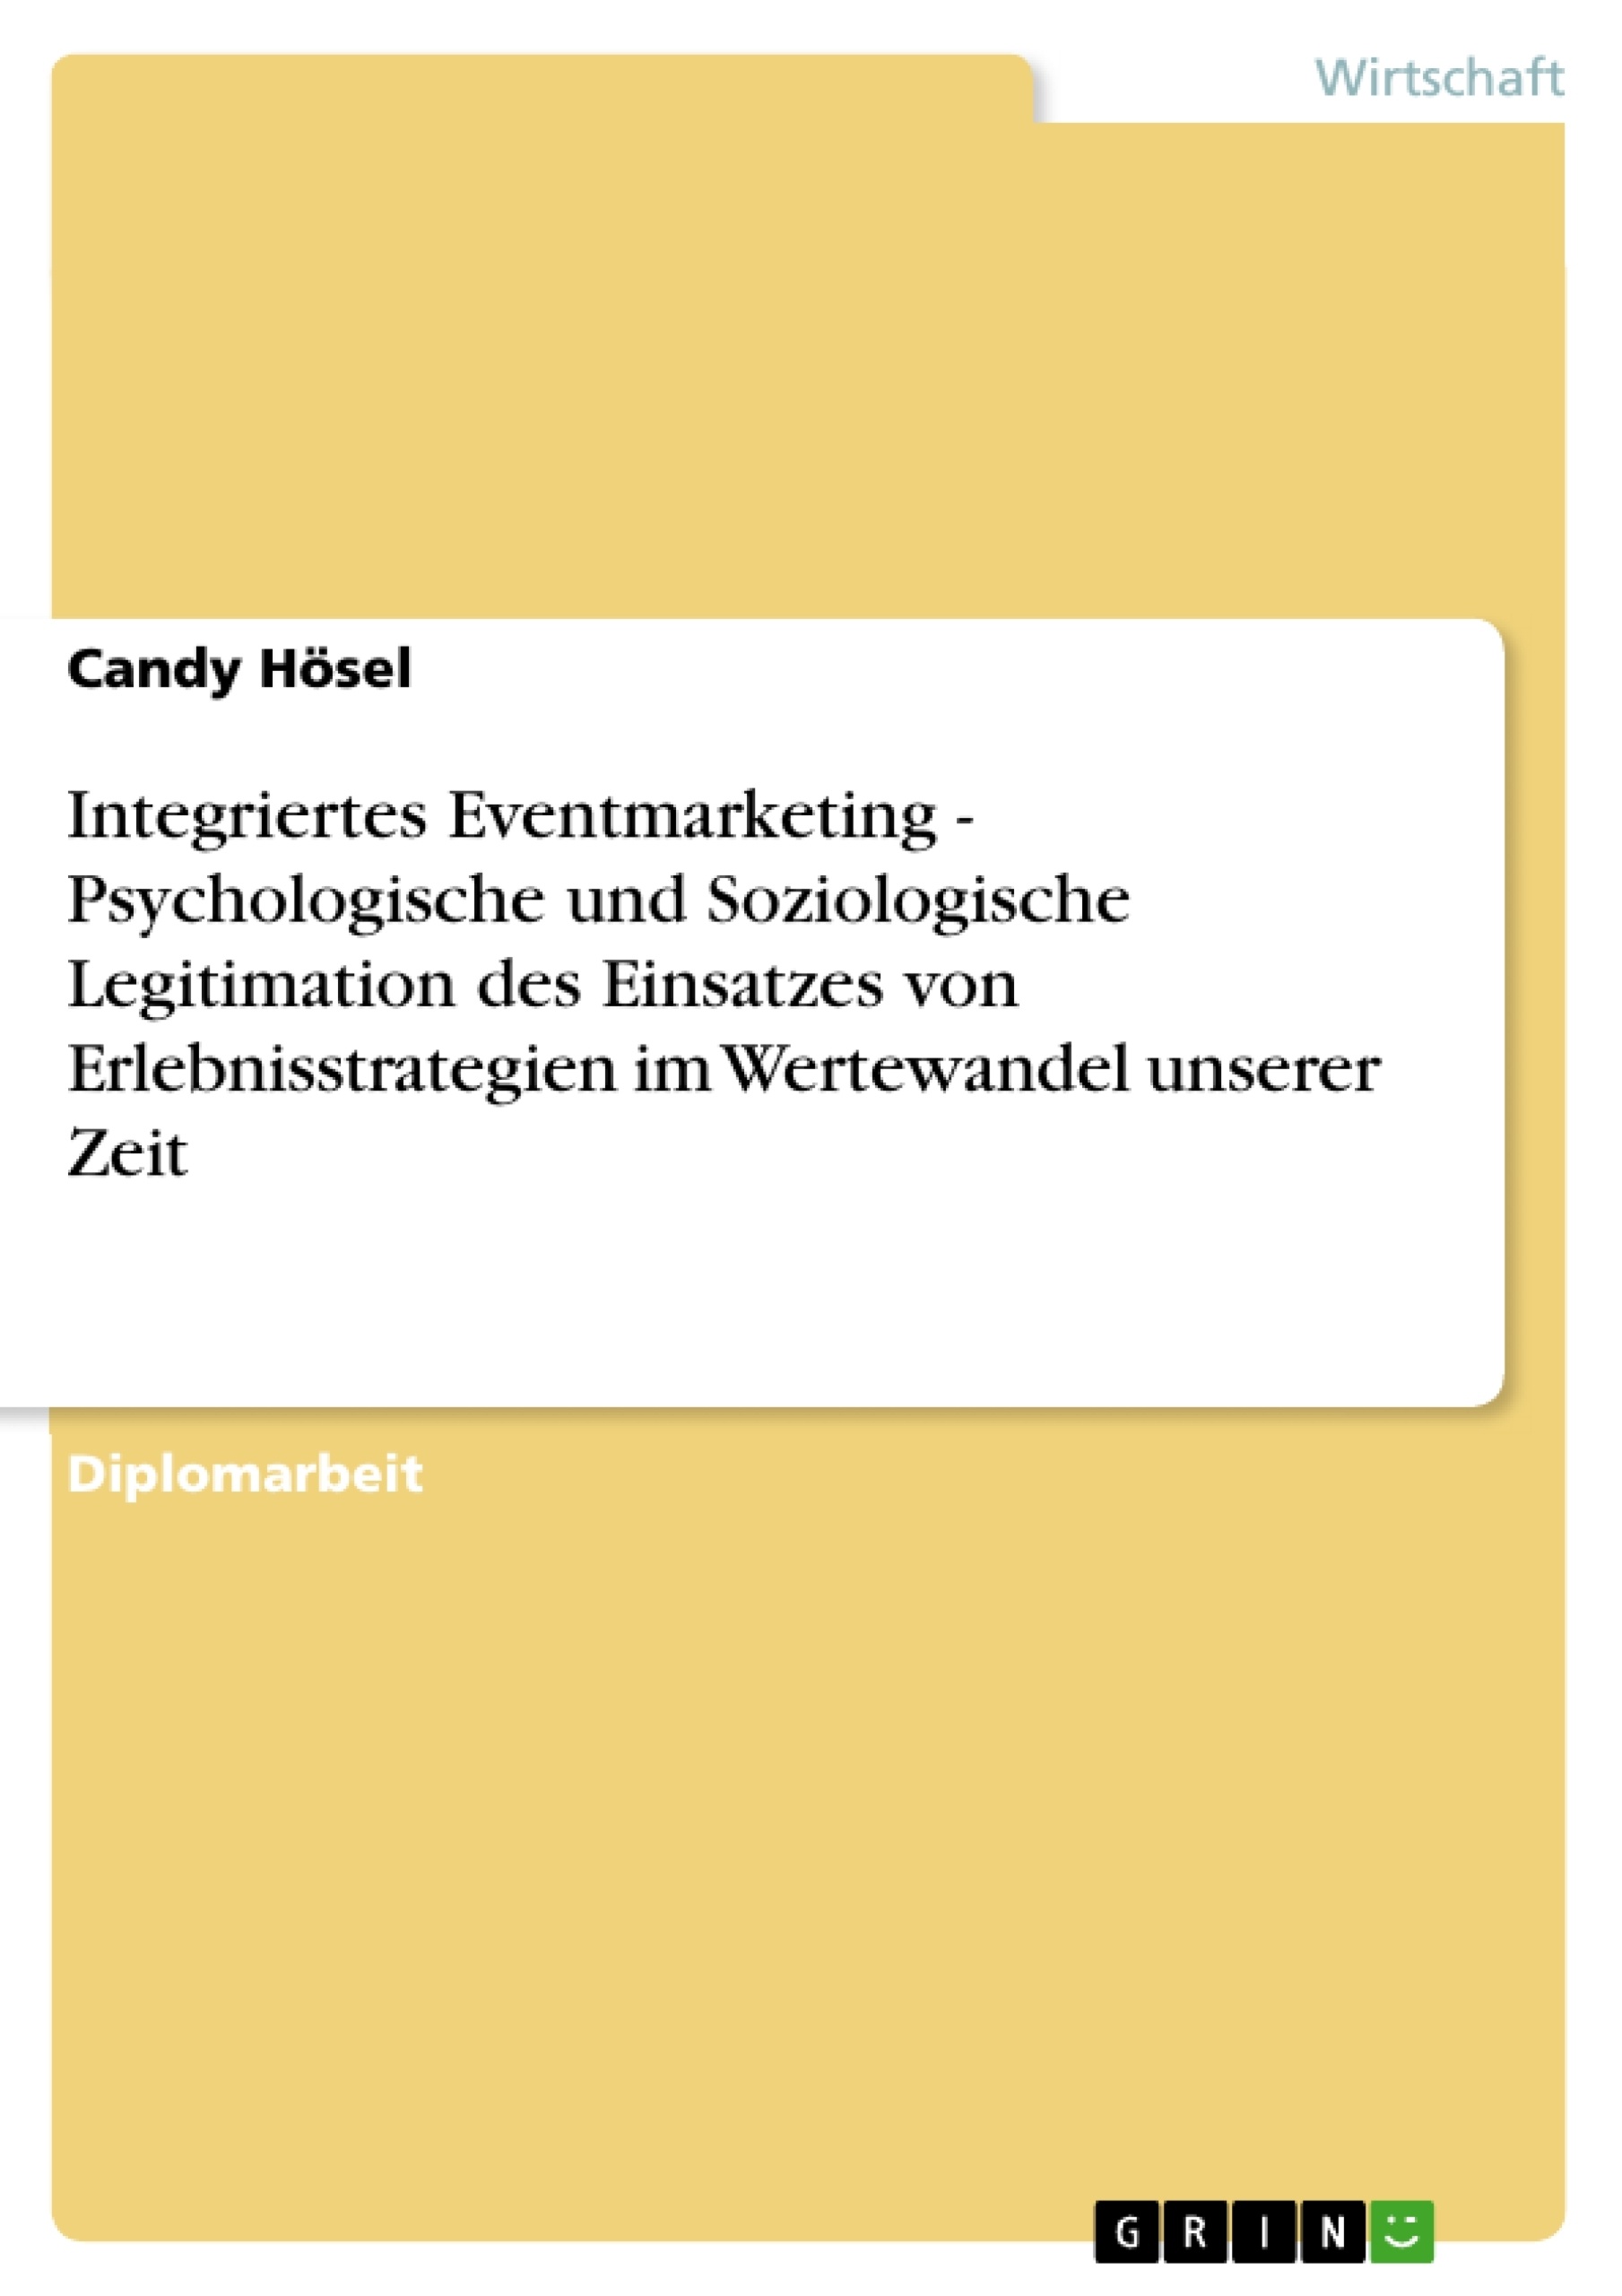 Title: Integriertes Eventmarketing - Psychologische und Soziologische Legitimation des Einsatzes von Erlebnisstrategien im Wertewandel unserer Zeit